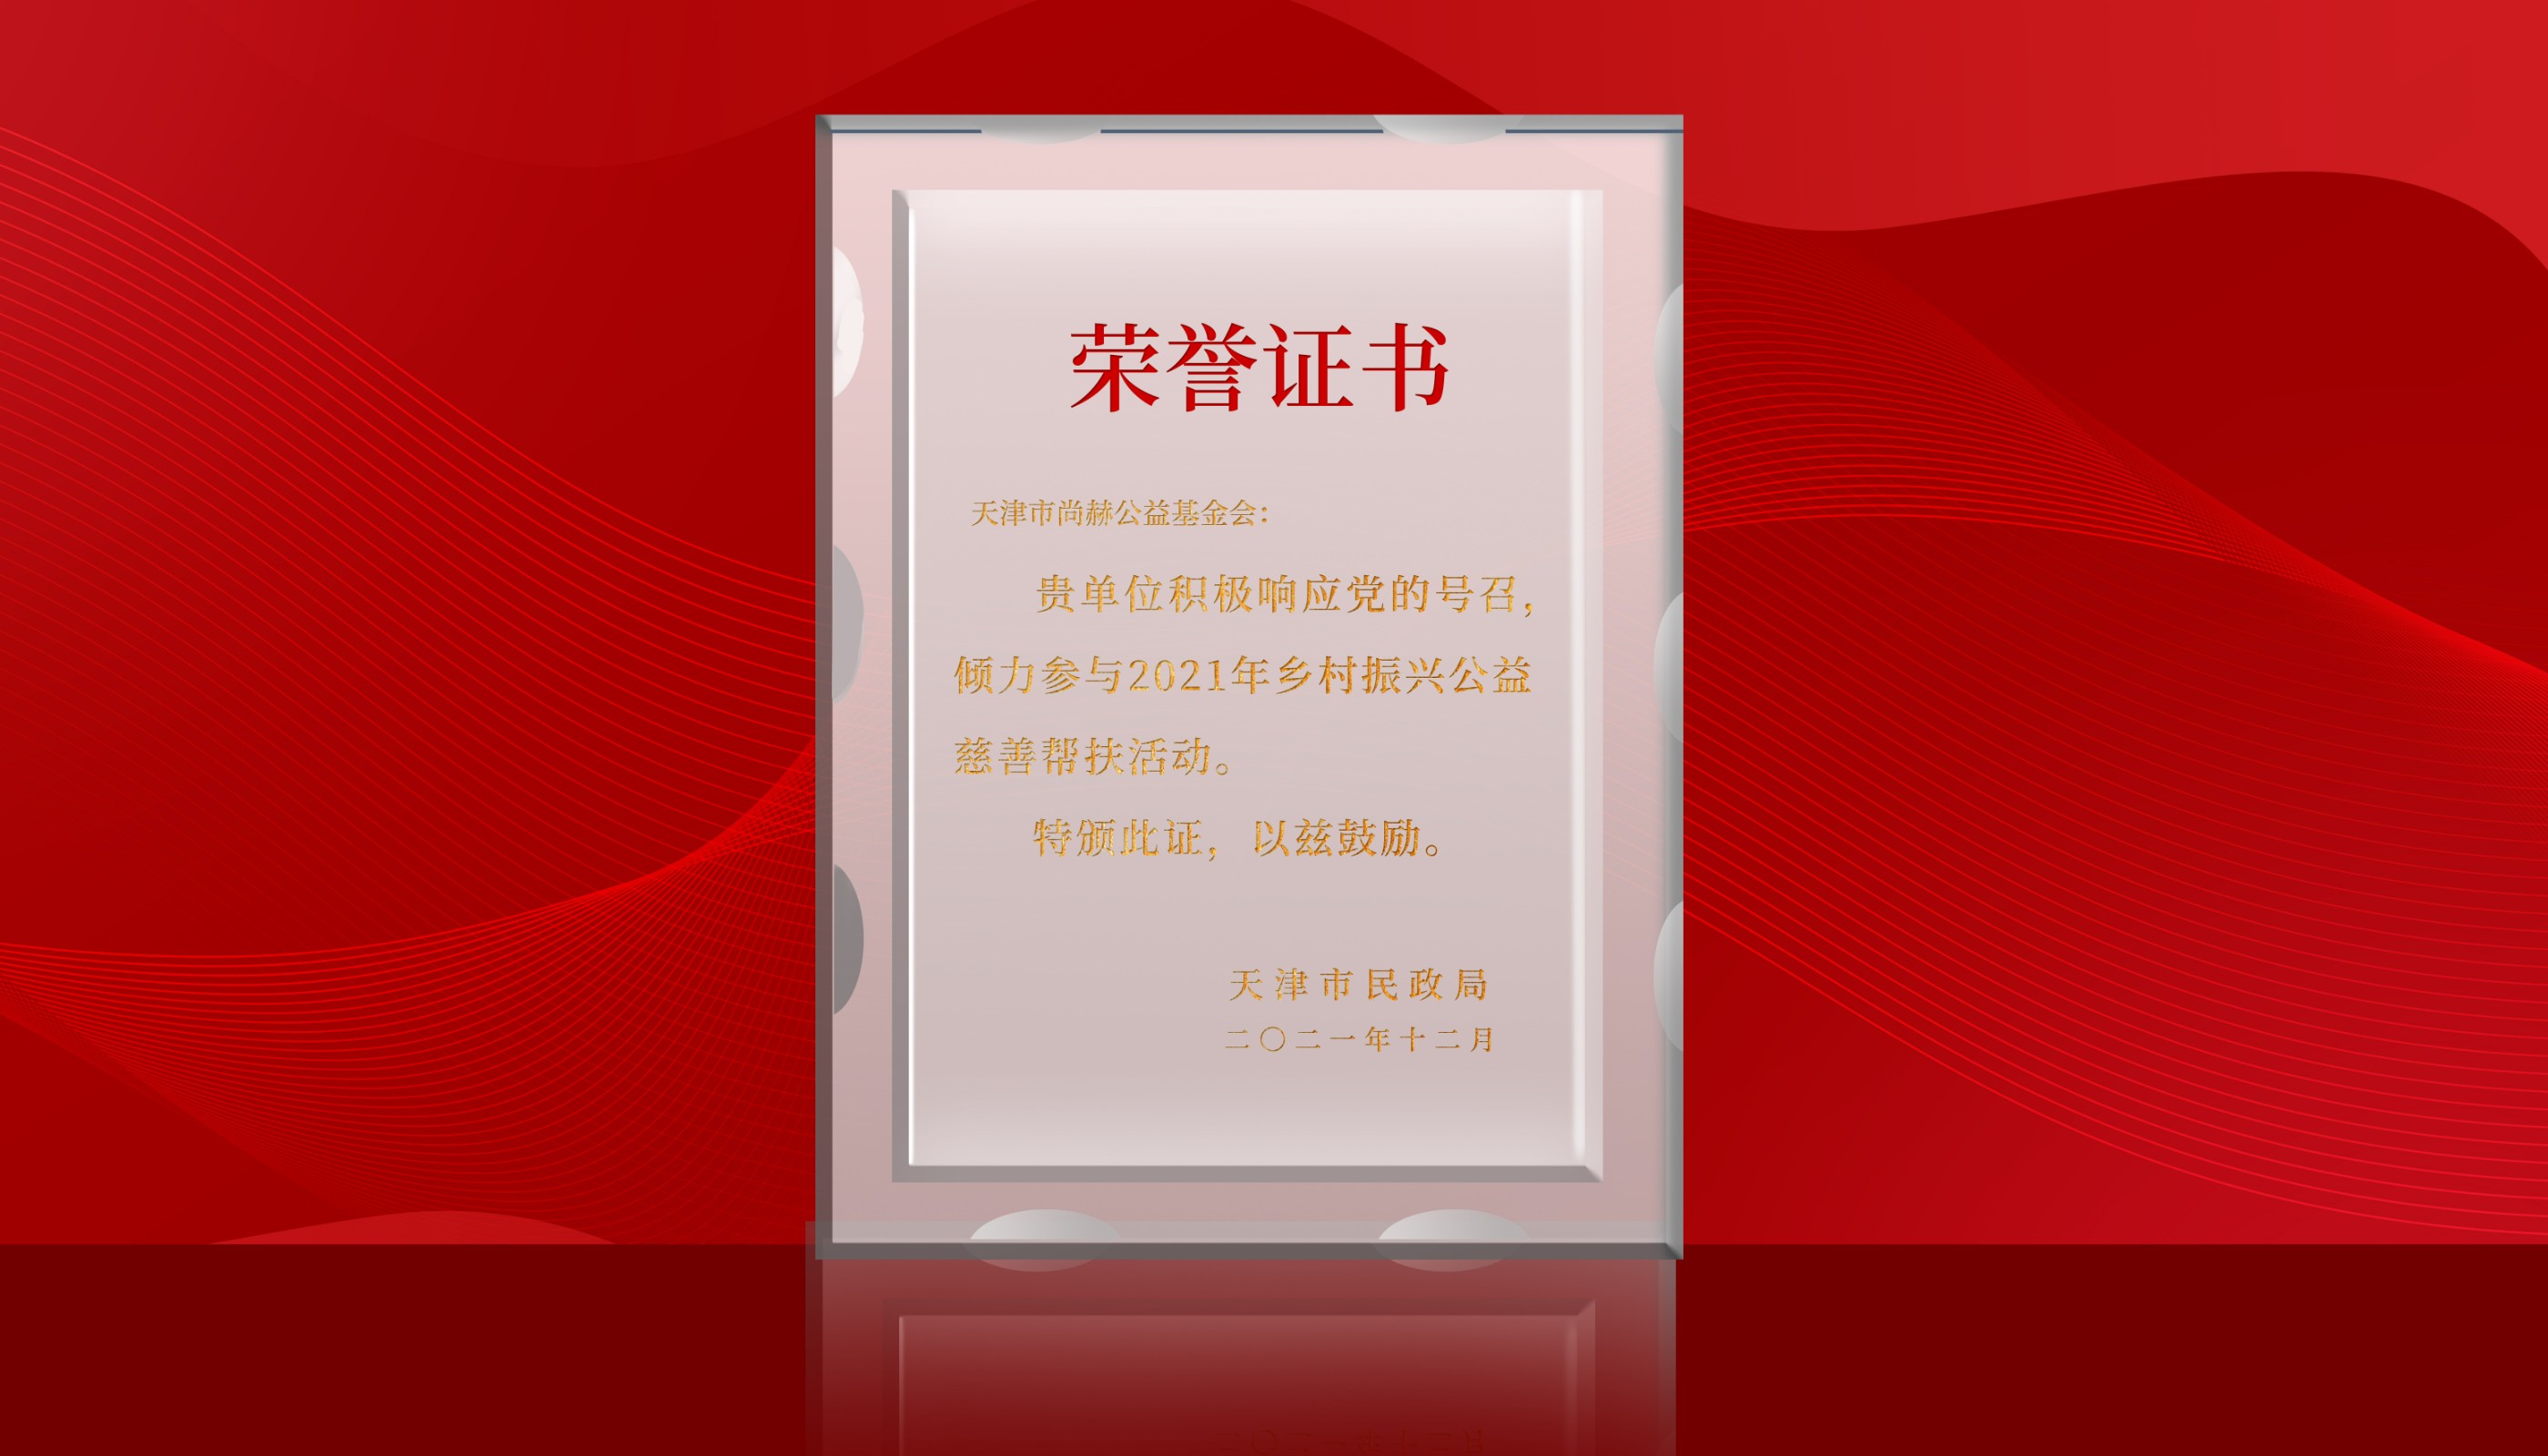 2022年7月-正规的十大网投实体平台(中国)有限公司公益基金会荣获天津市民政局颁发的荣誉证书